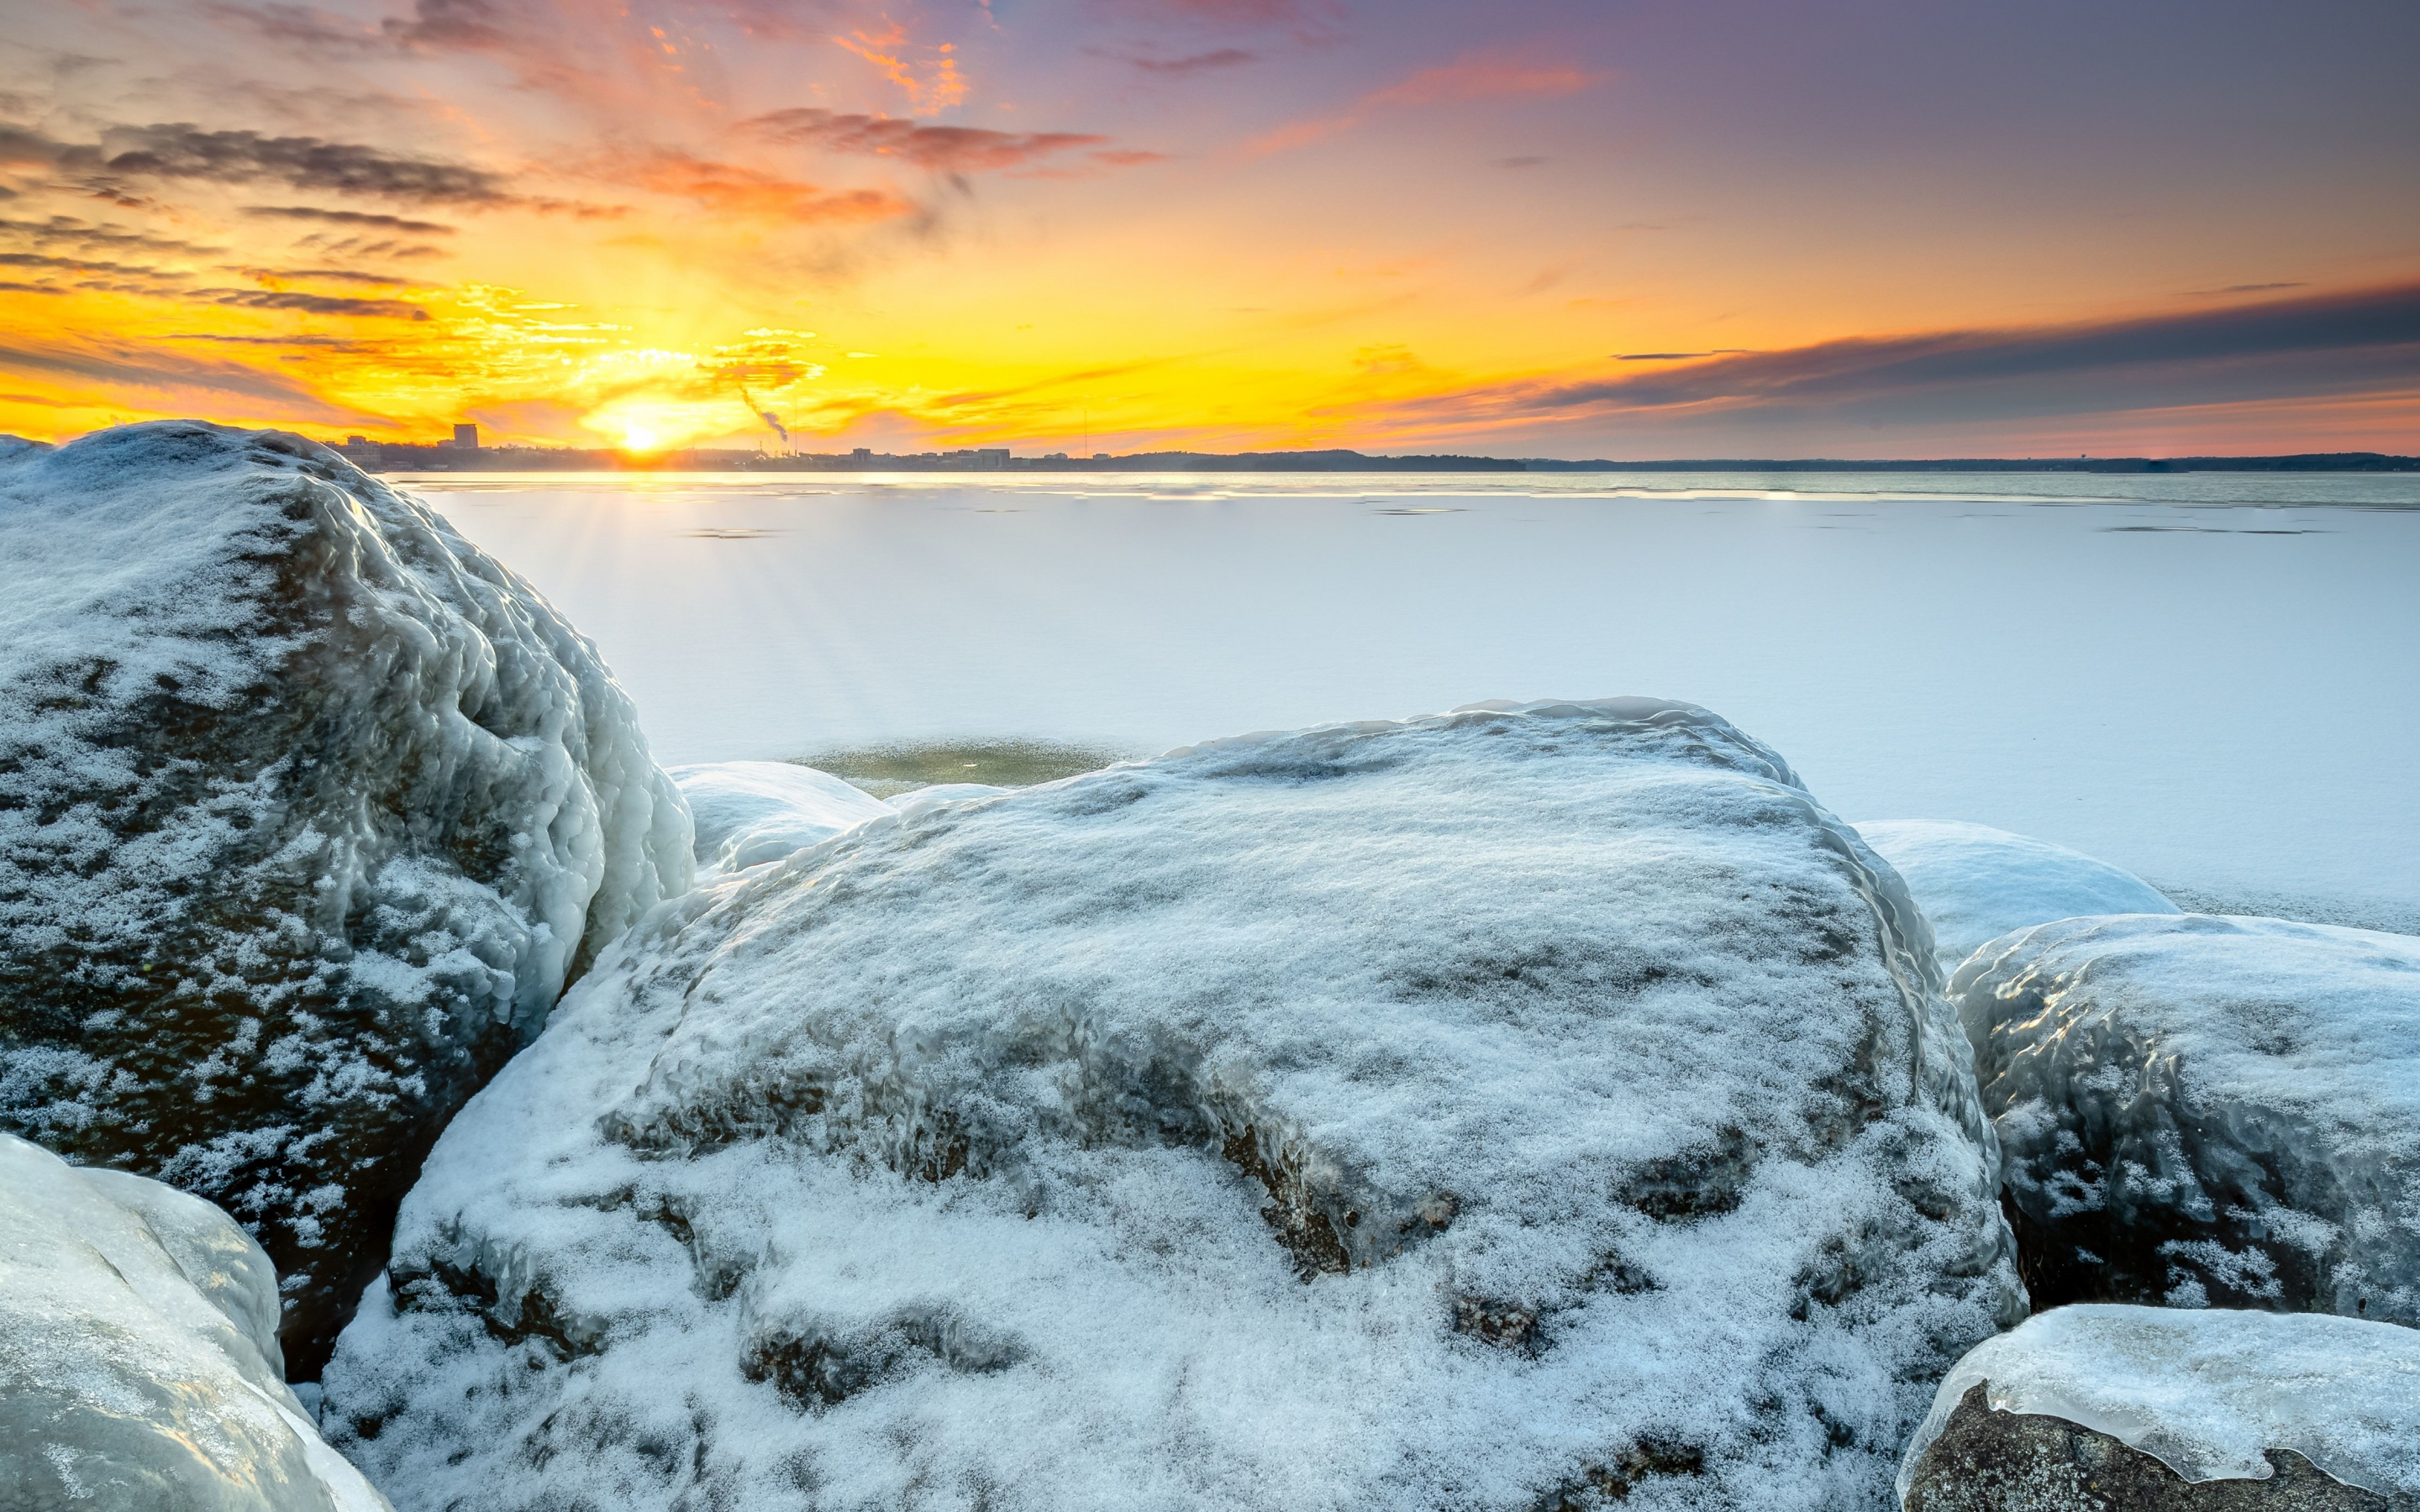 Snow layer, rocks, winter, frozen shore, sunset, 2880x1800 wallpaper